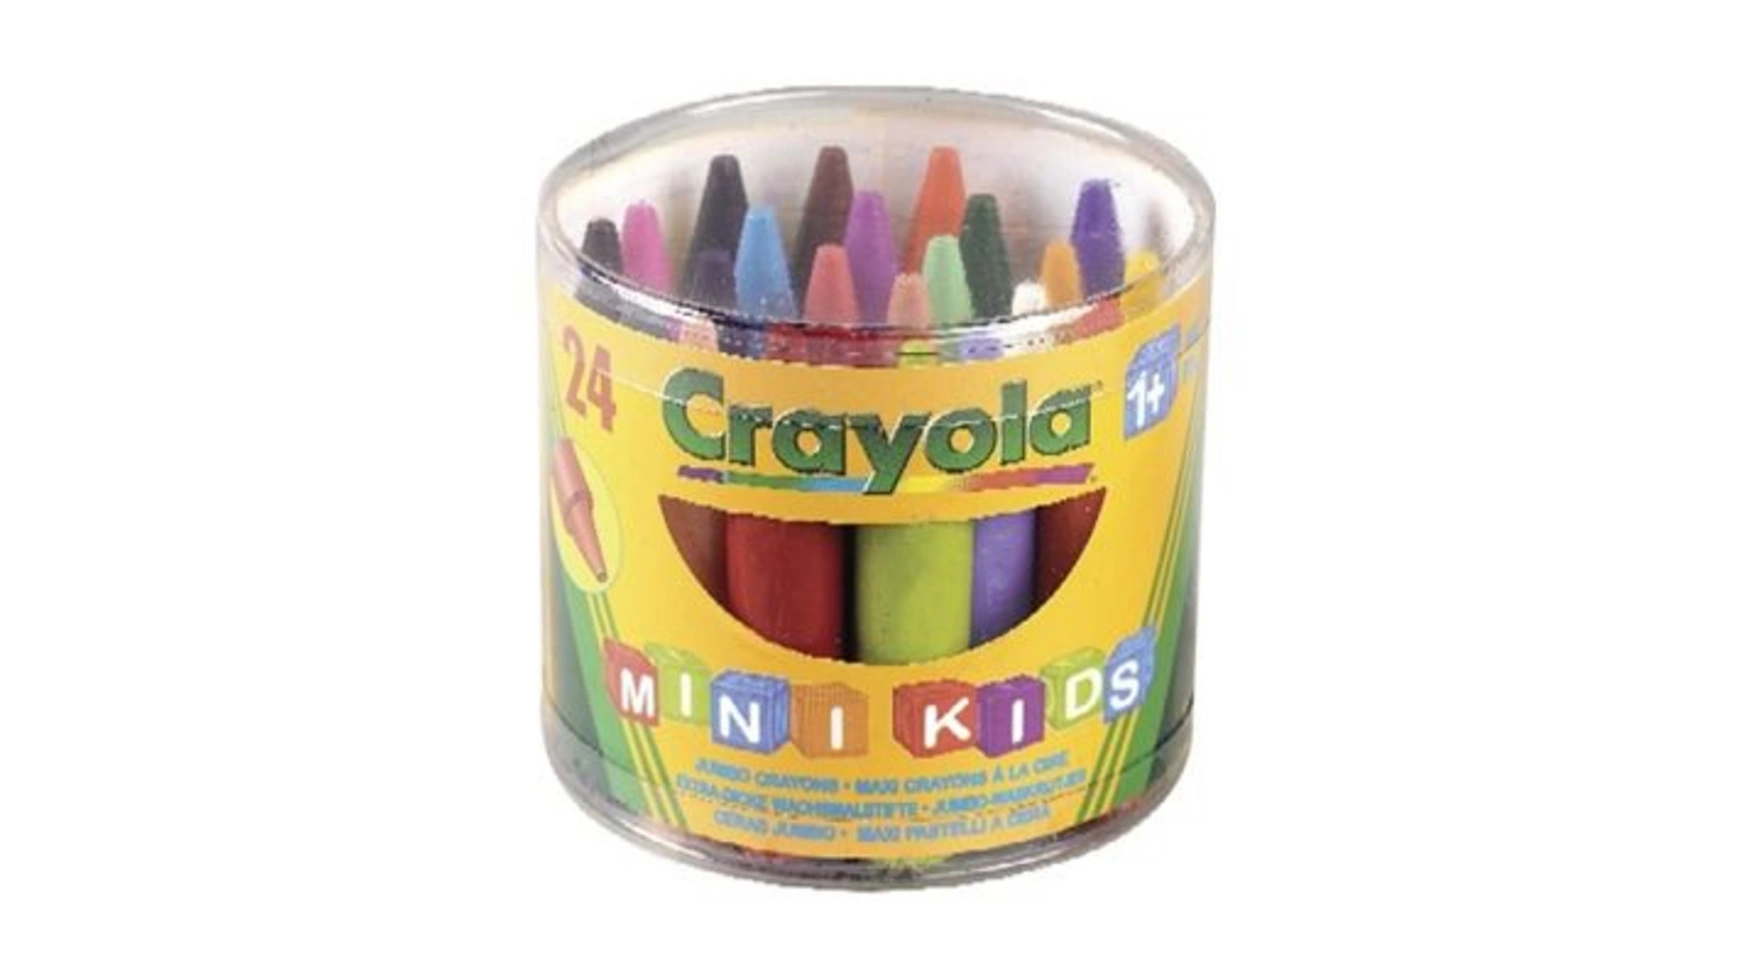 crayola 8 count jumbo crayons Crayola 24 восковых мелка Jumbo